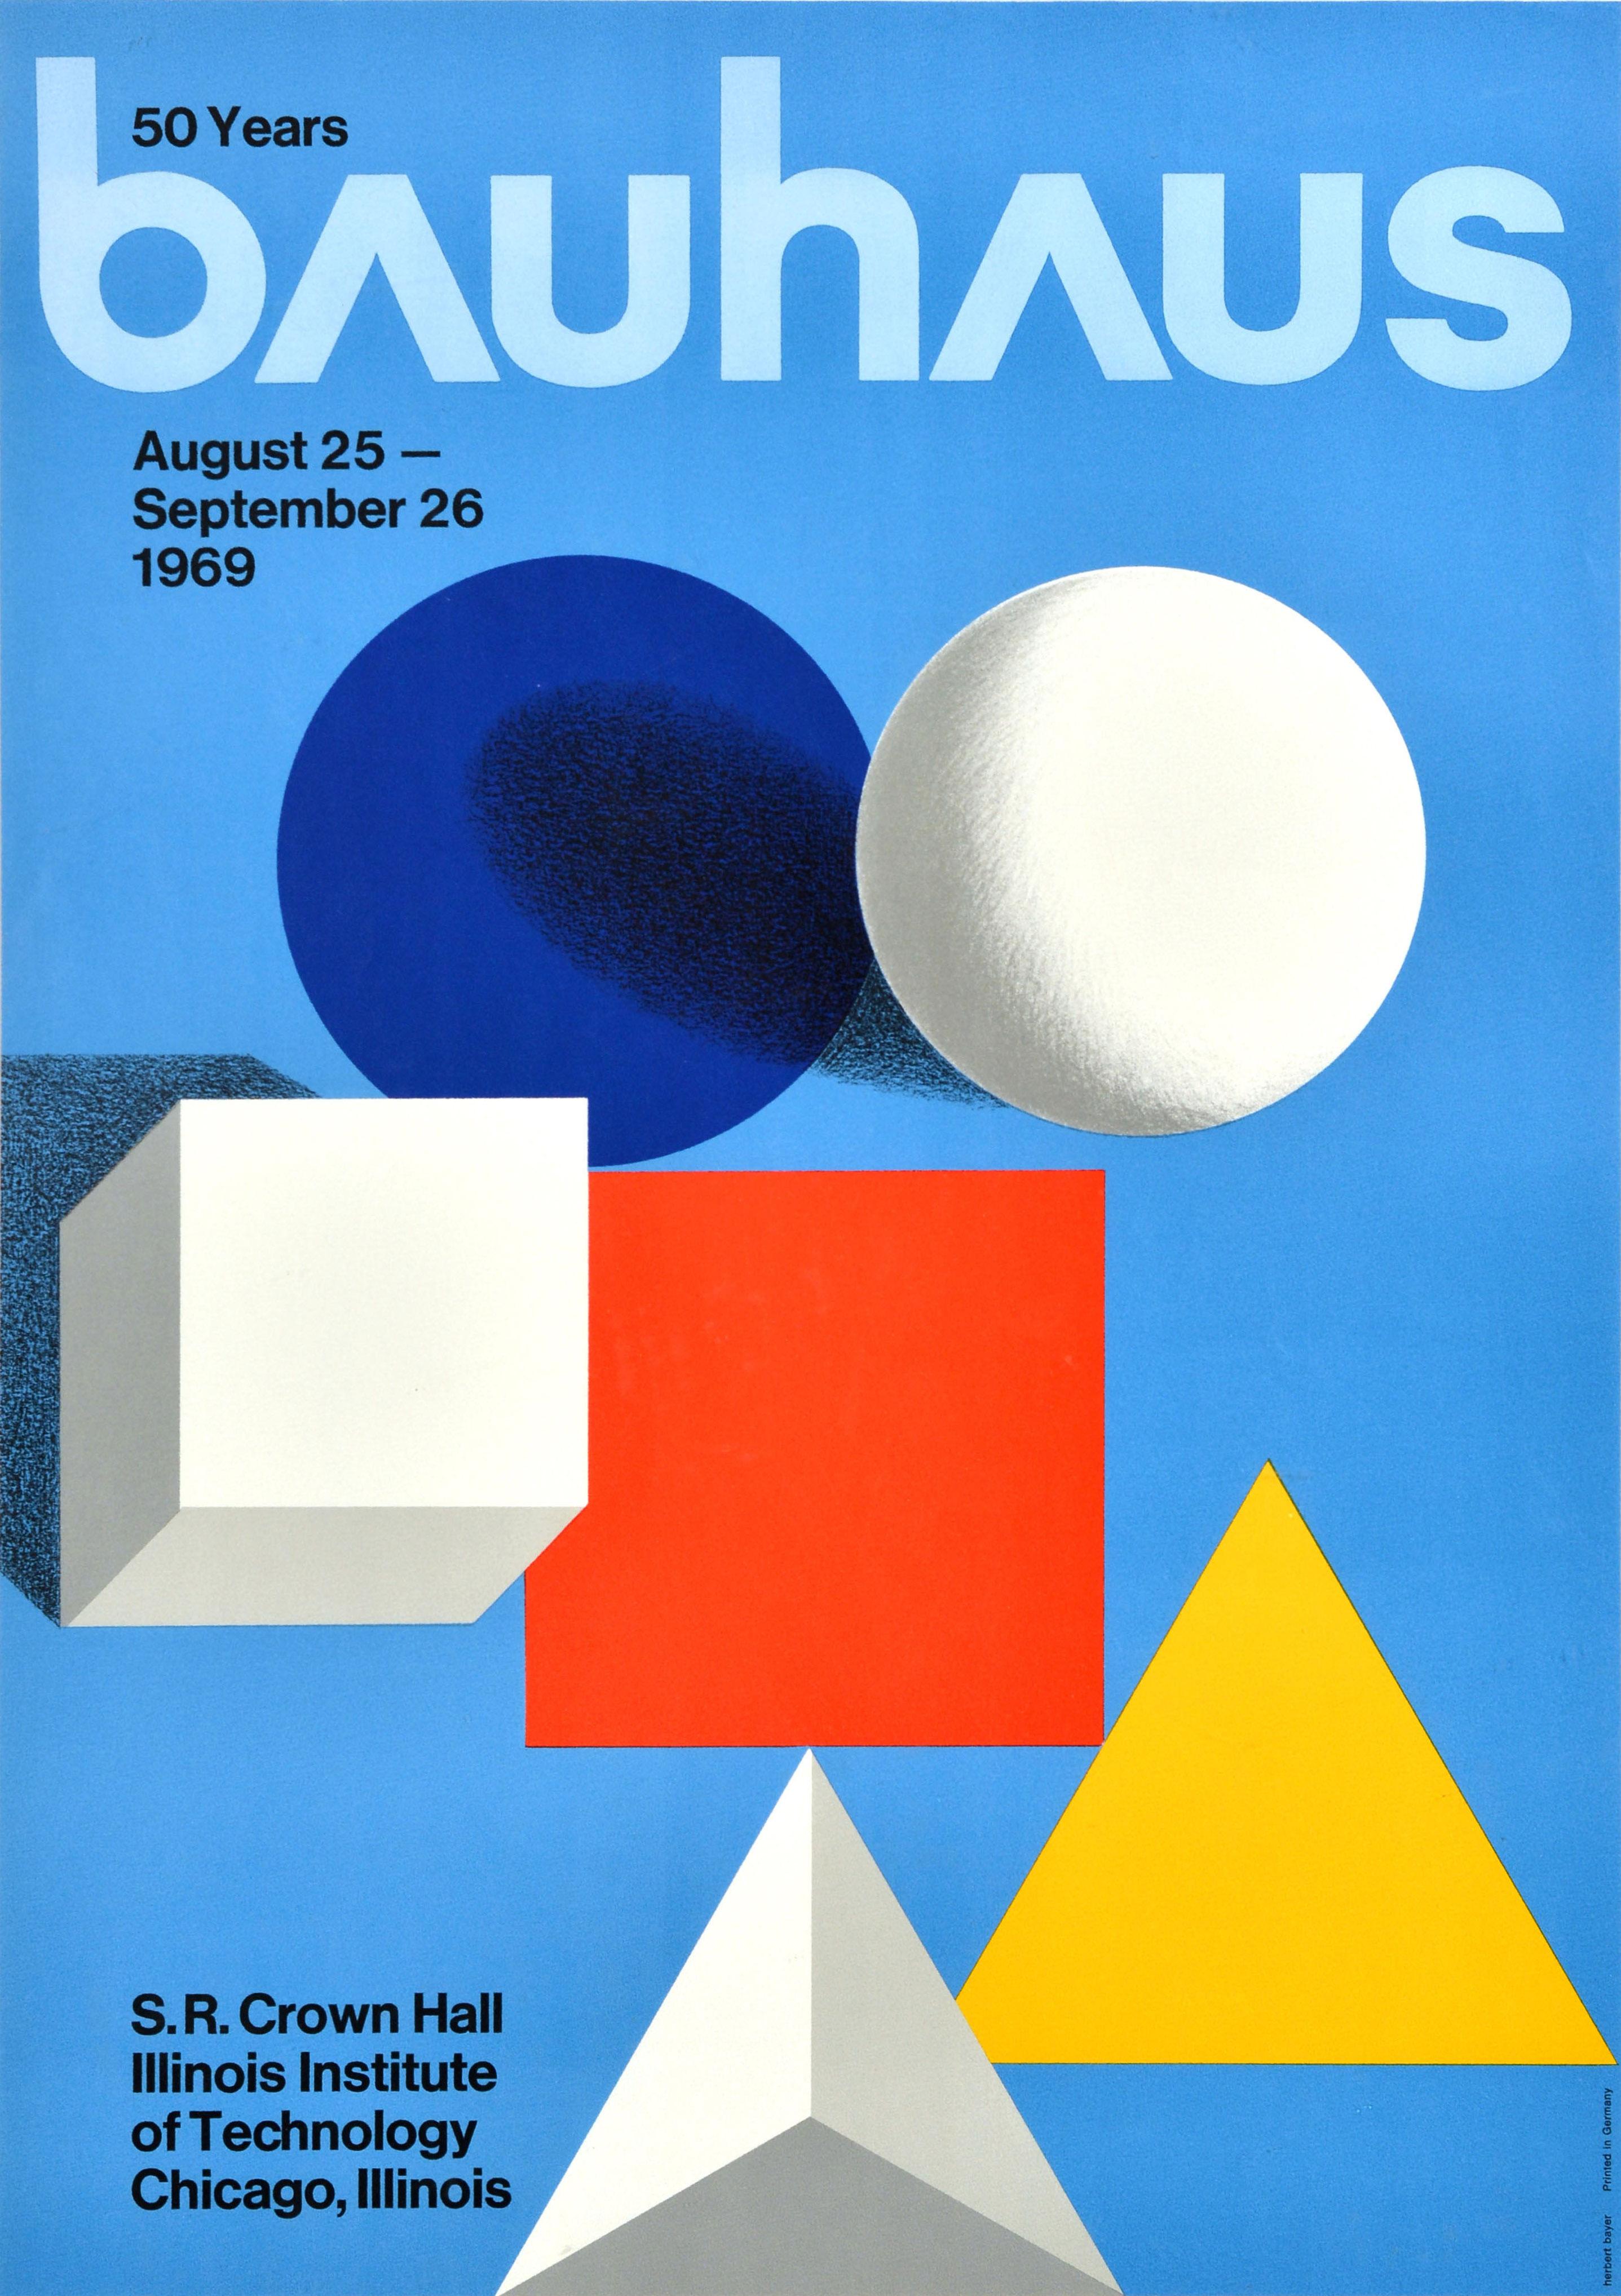 Affiche originale de l'exposition 50 Years Bauhaus qui s'est tenue du 25 août au 26 septembre 1969 à la S.R. Crown Hall Illinois Institute of Technology Chicago (IIT Illinois Tech ; fondé en 1890) présentant une composition minimaliste comprenant un